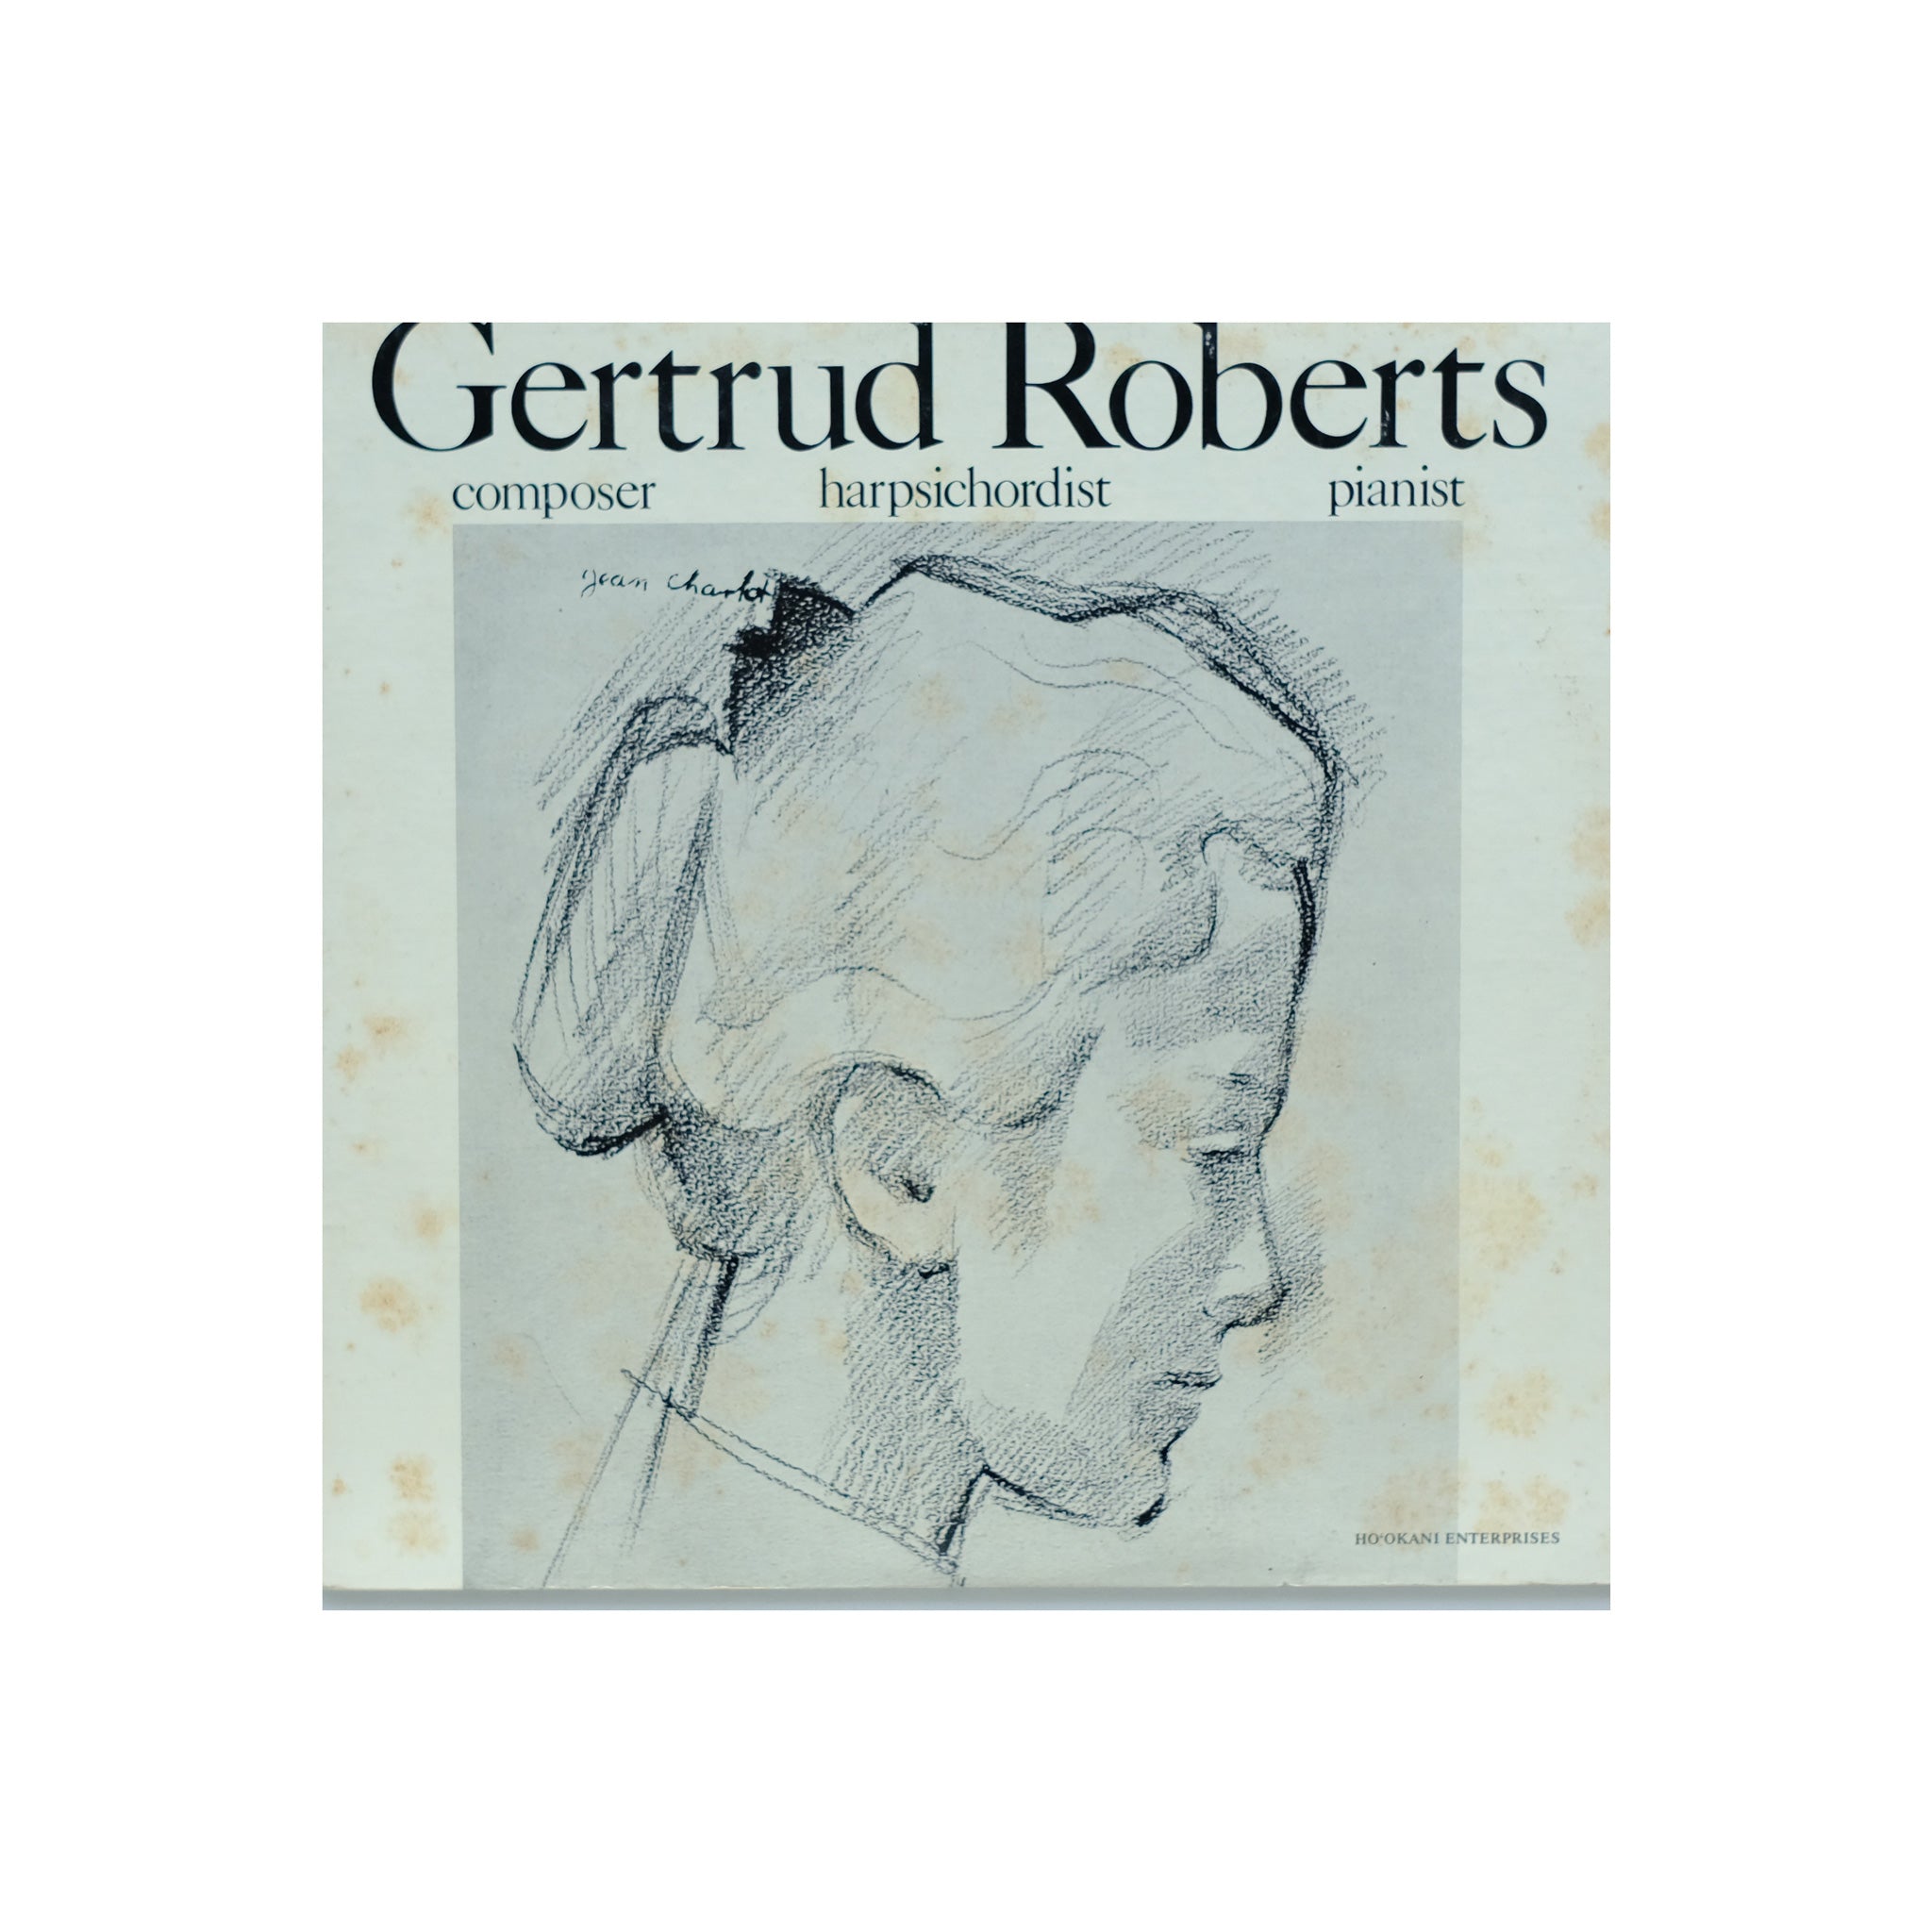 Gertrud Roberts - composer harpsichordist pianist